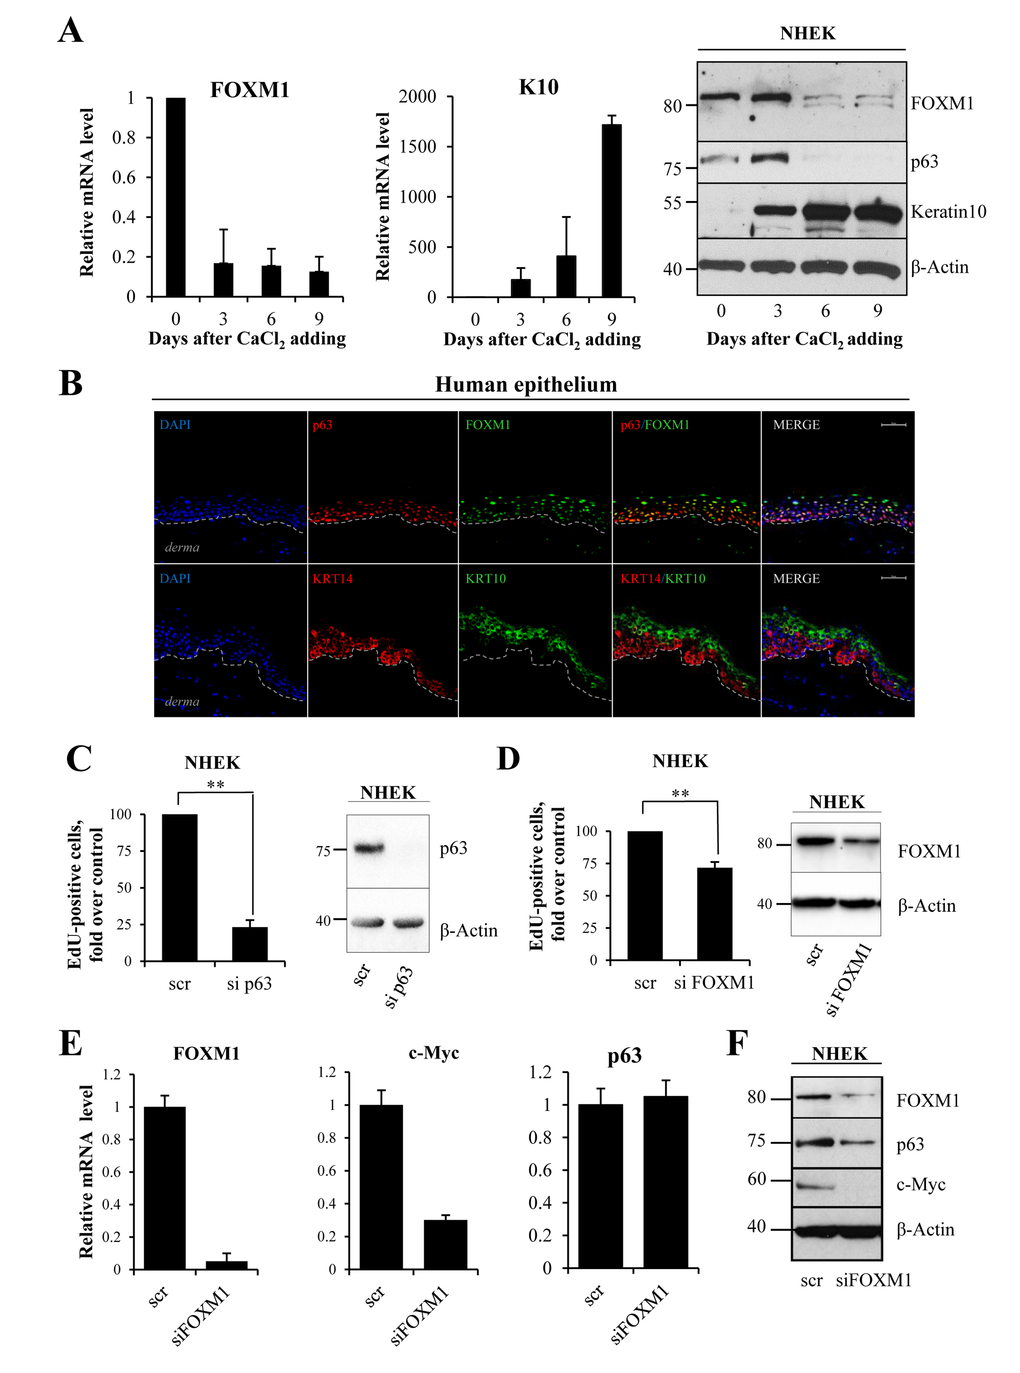 FOXM1 level correlates with proliferative status of keratinocytes